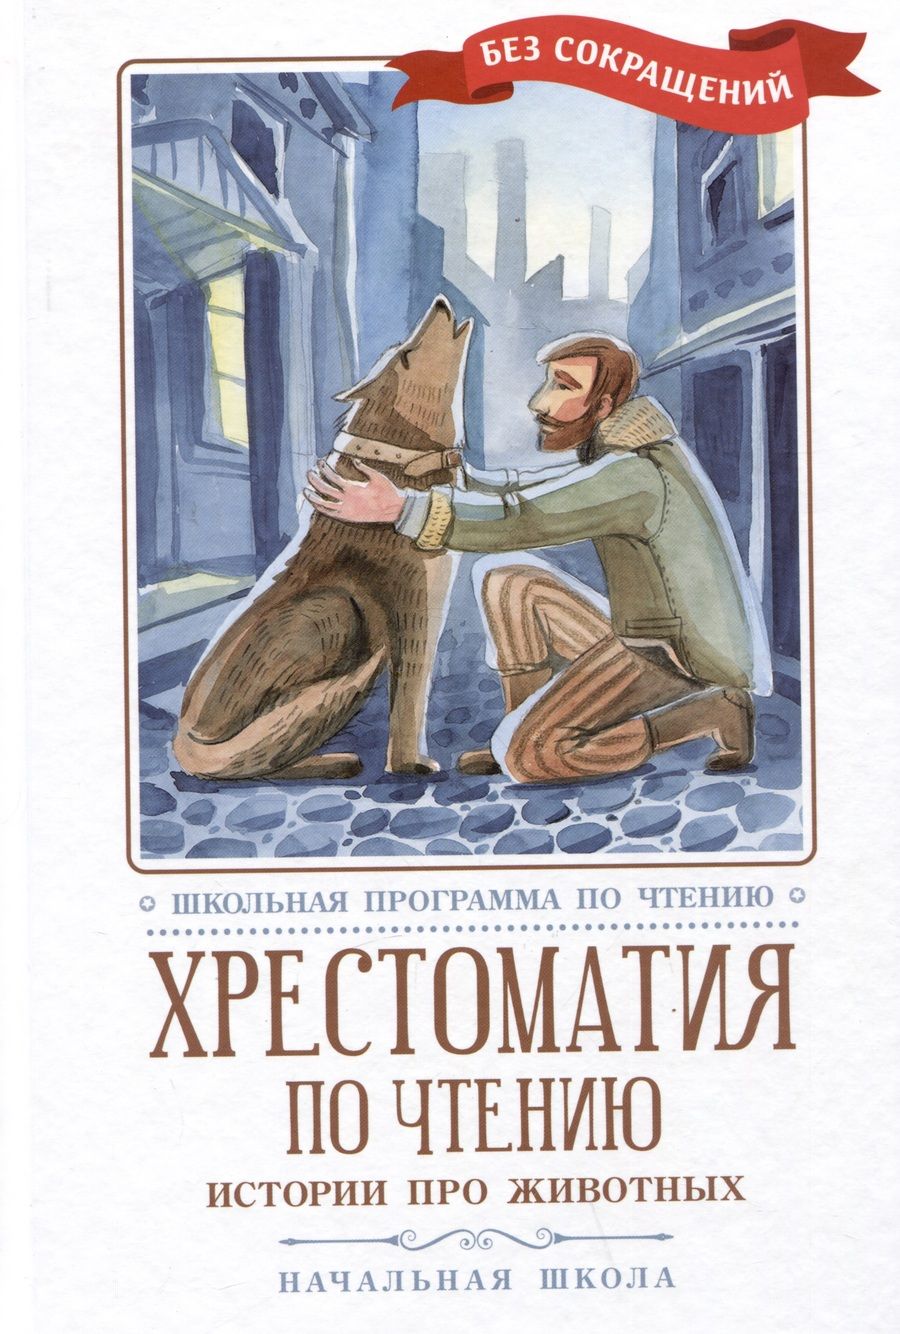 Обложка книги "Дуров, Толстой, Чехов: Хрестоматия по чтению. Истории про животных"